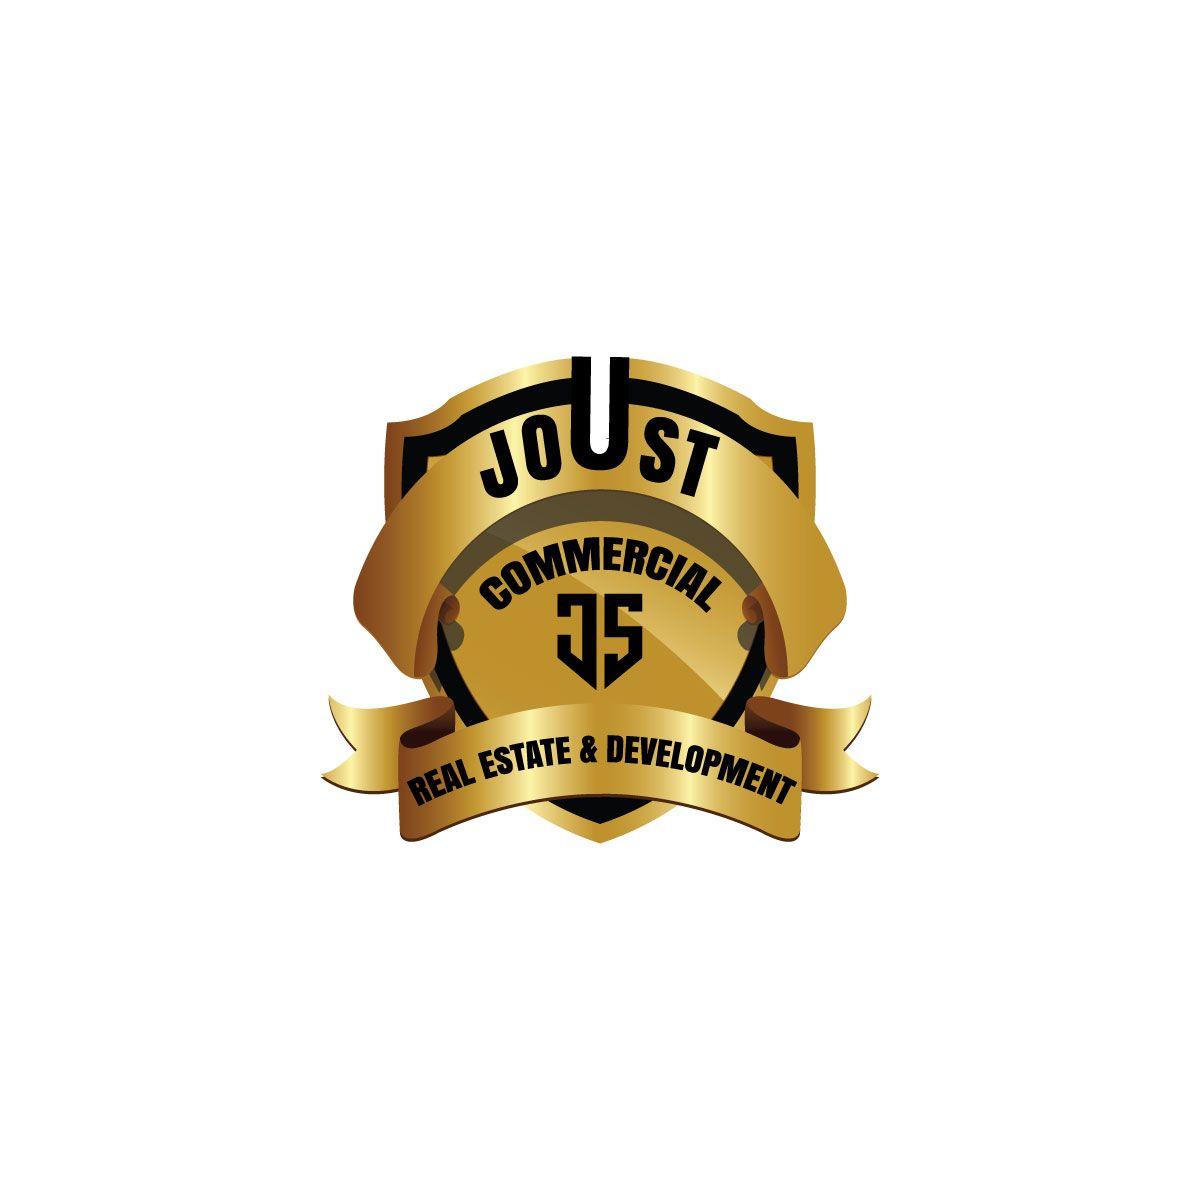 Joust Logo - Bold, Serious, Real Estate Development Logo Design for Joust ...